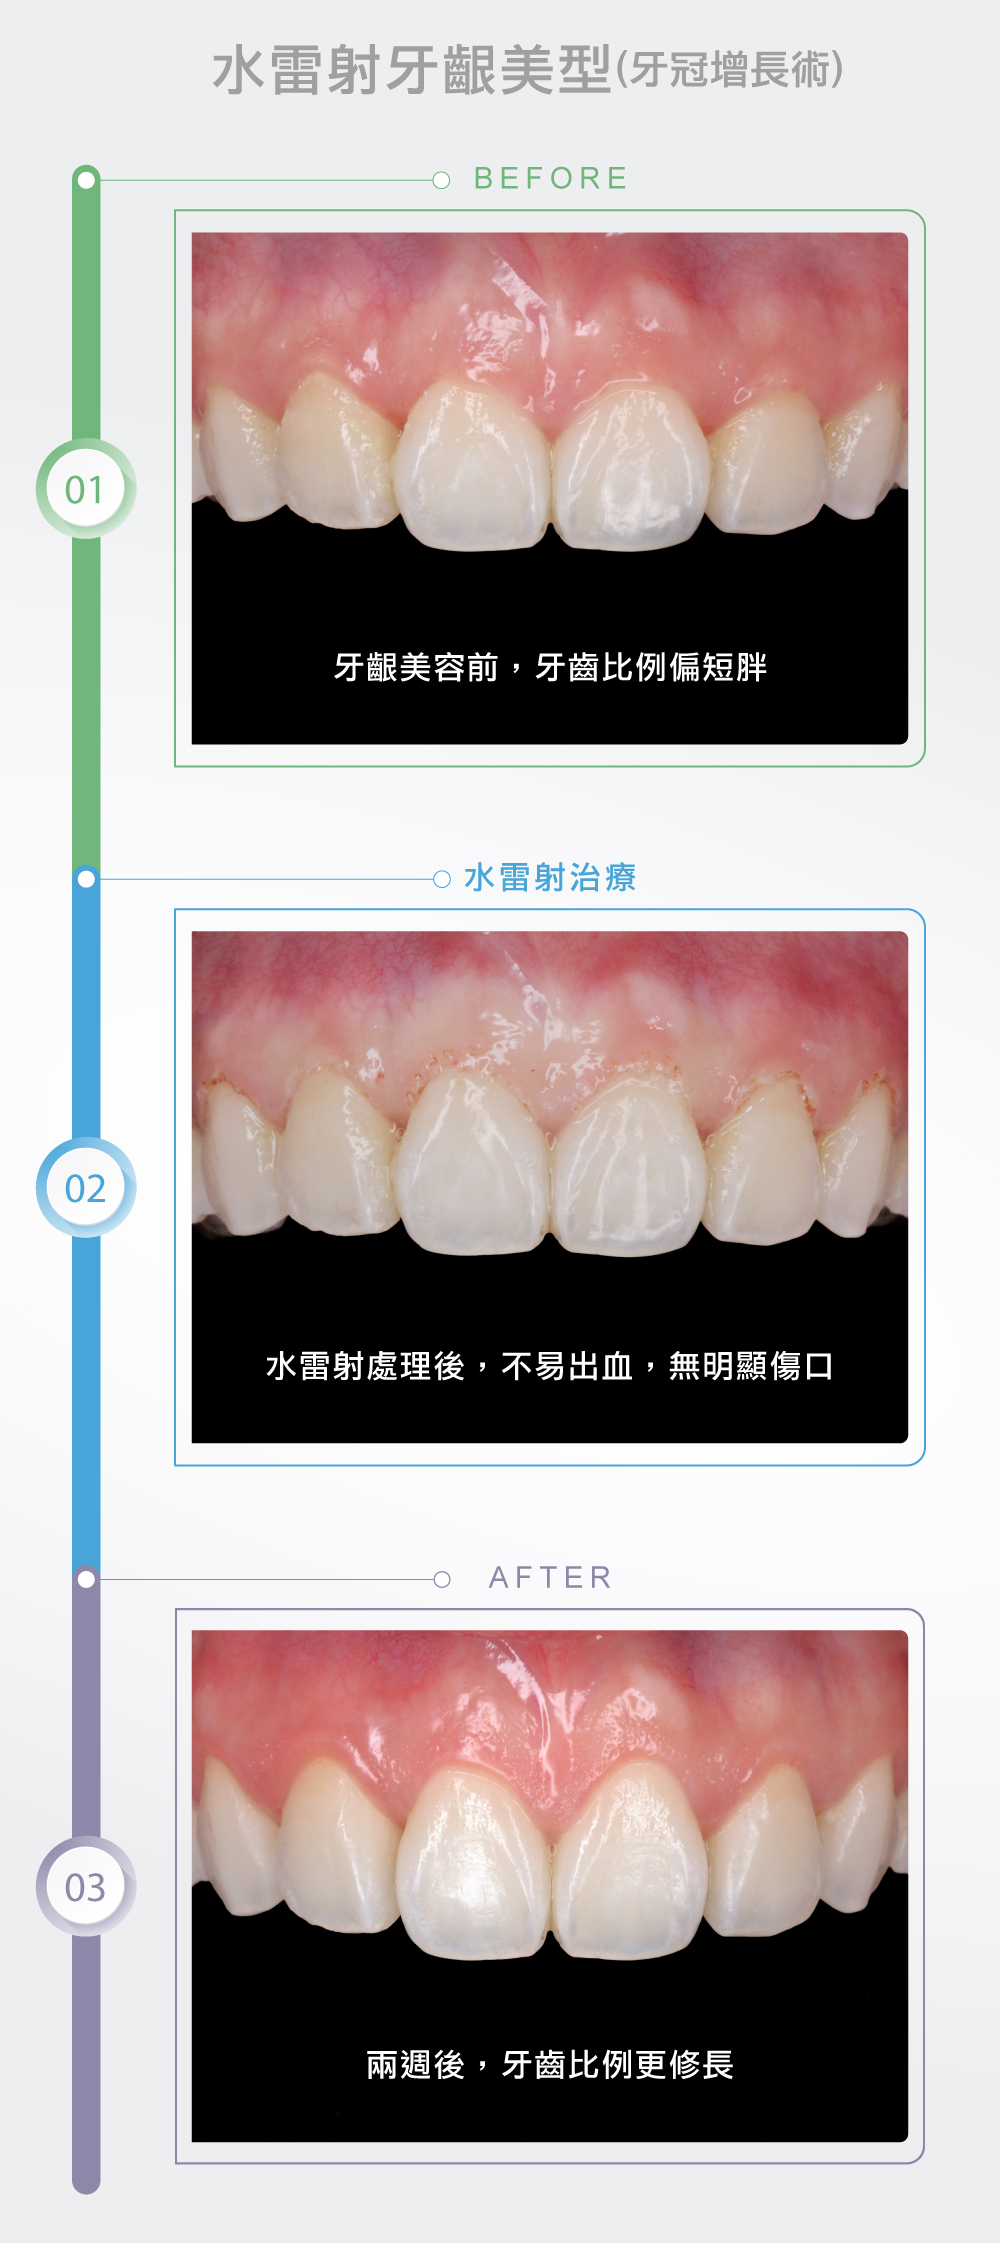 水雷射牙齦美型(牙冠增長術)3.0